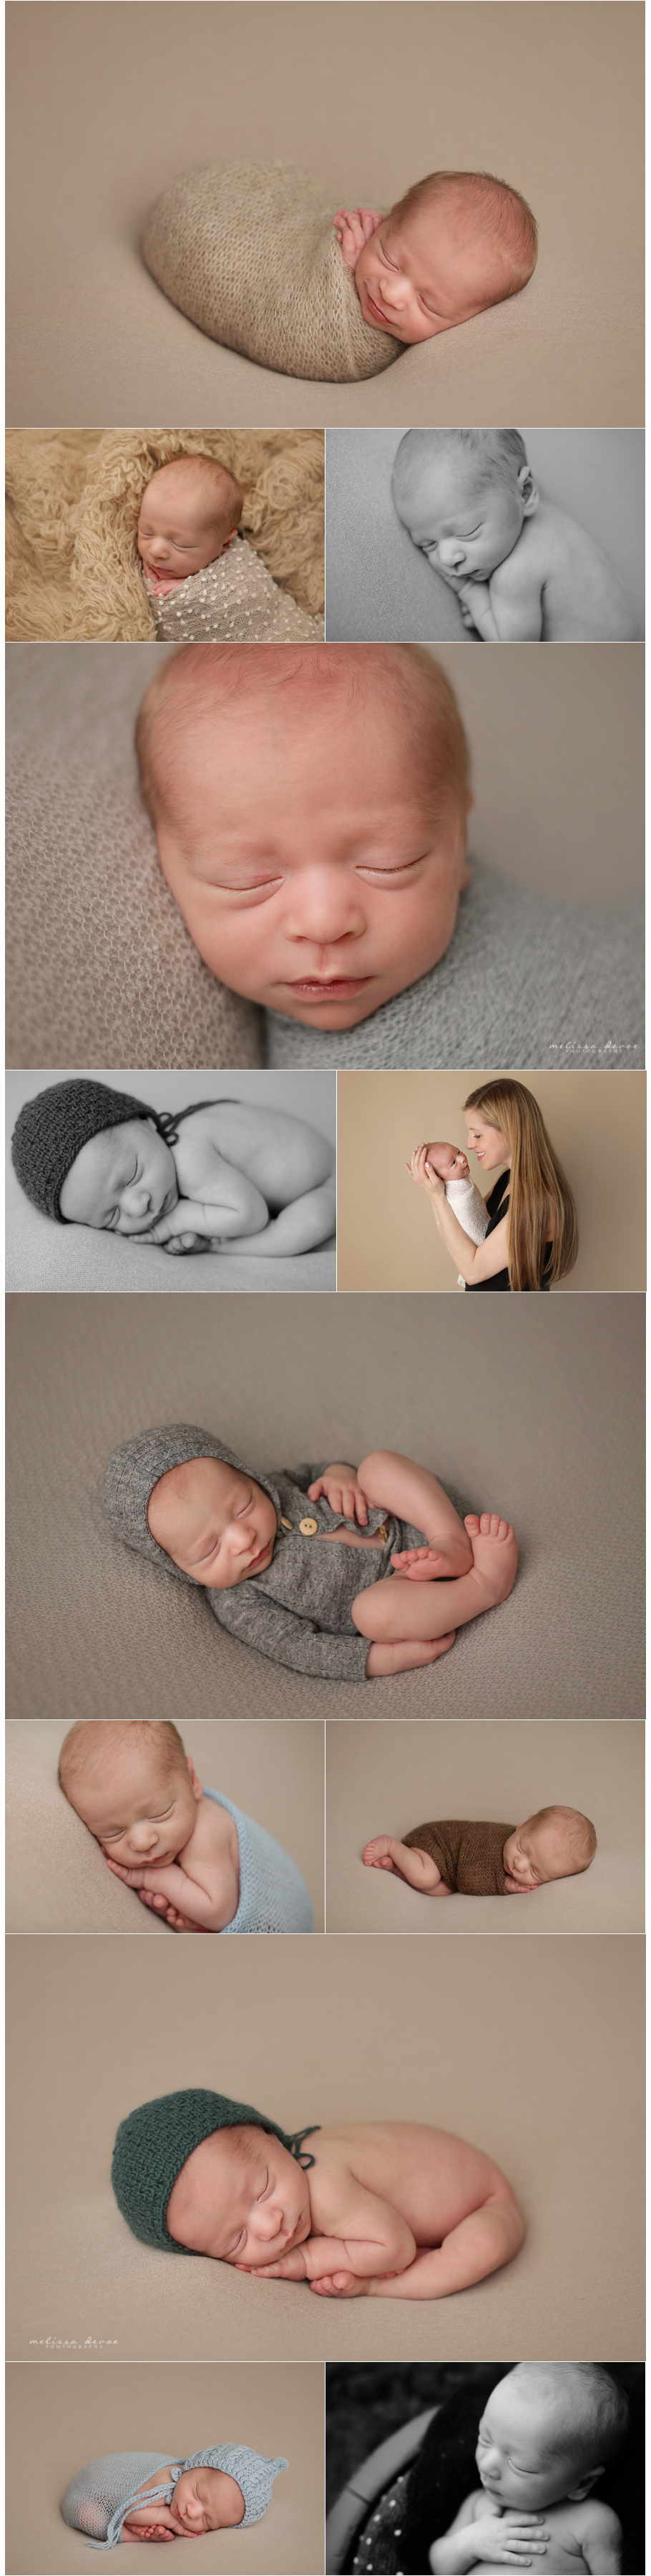 Raleigh Newborn Baby Photographer 3